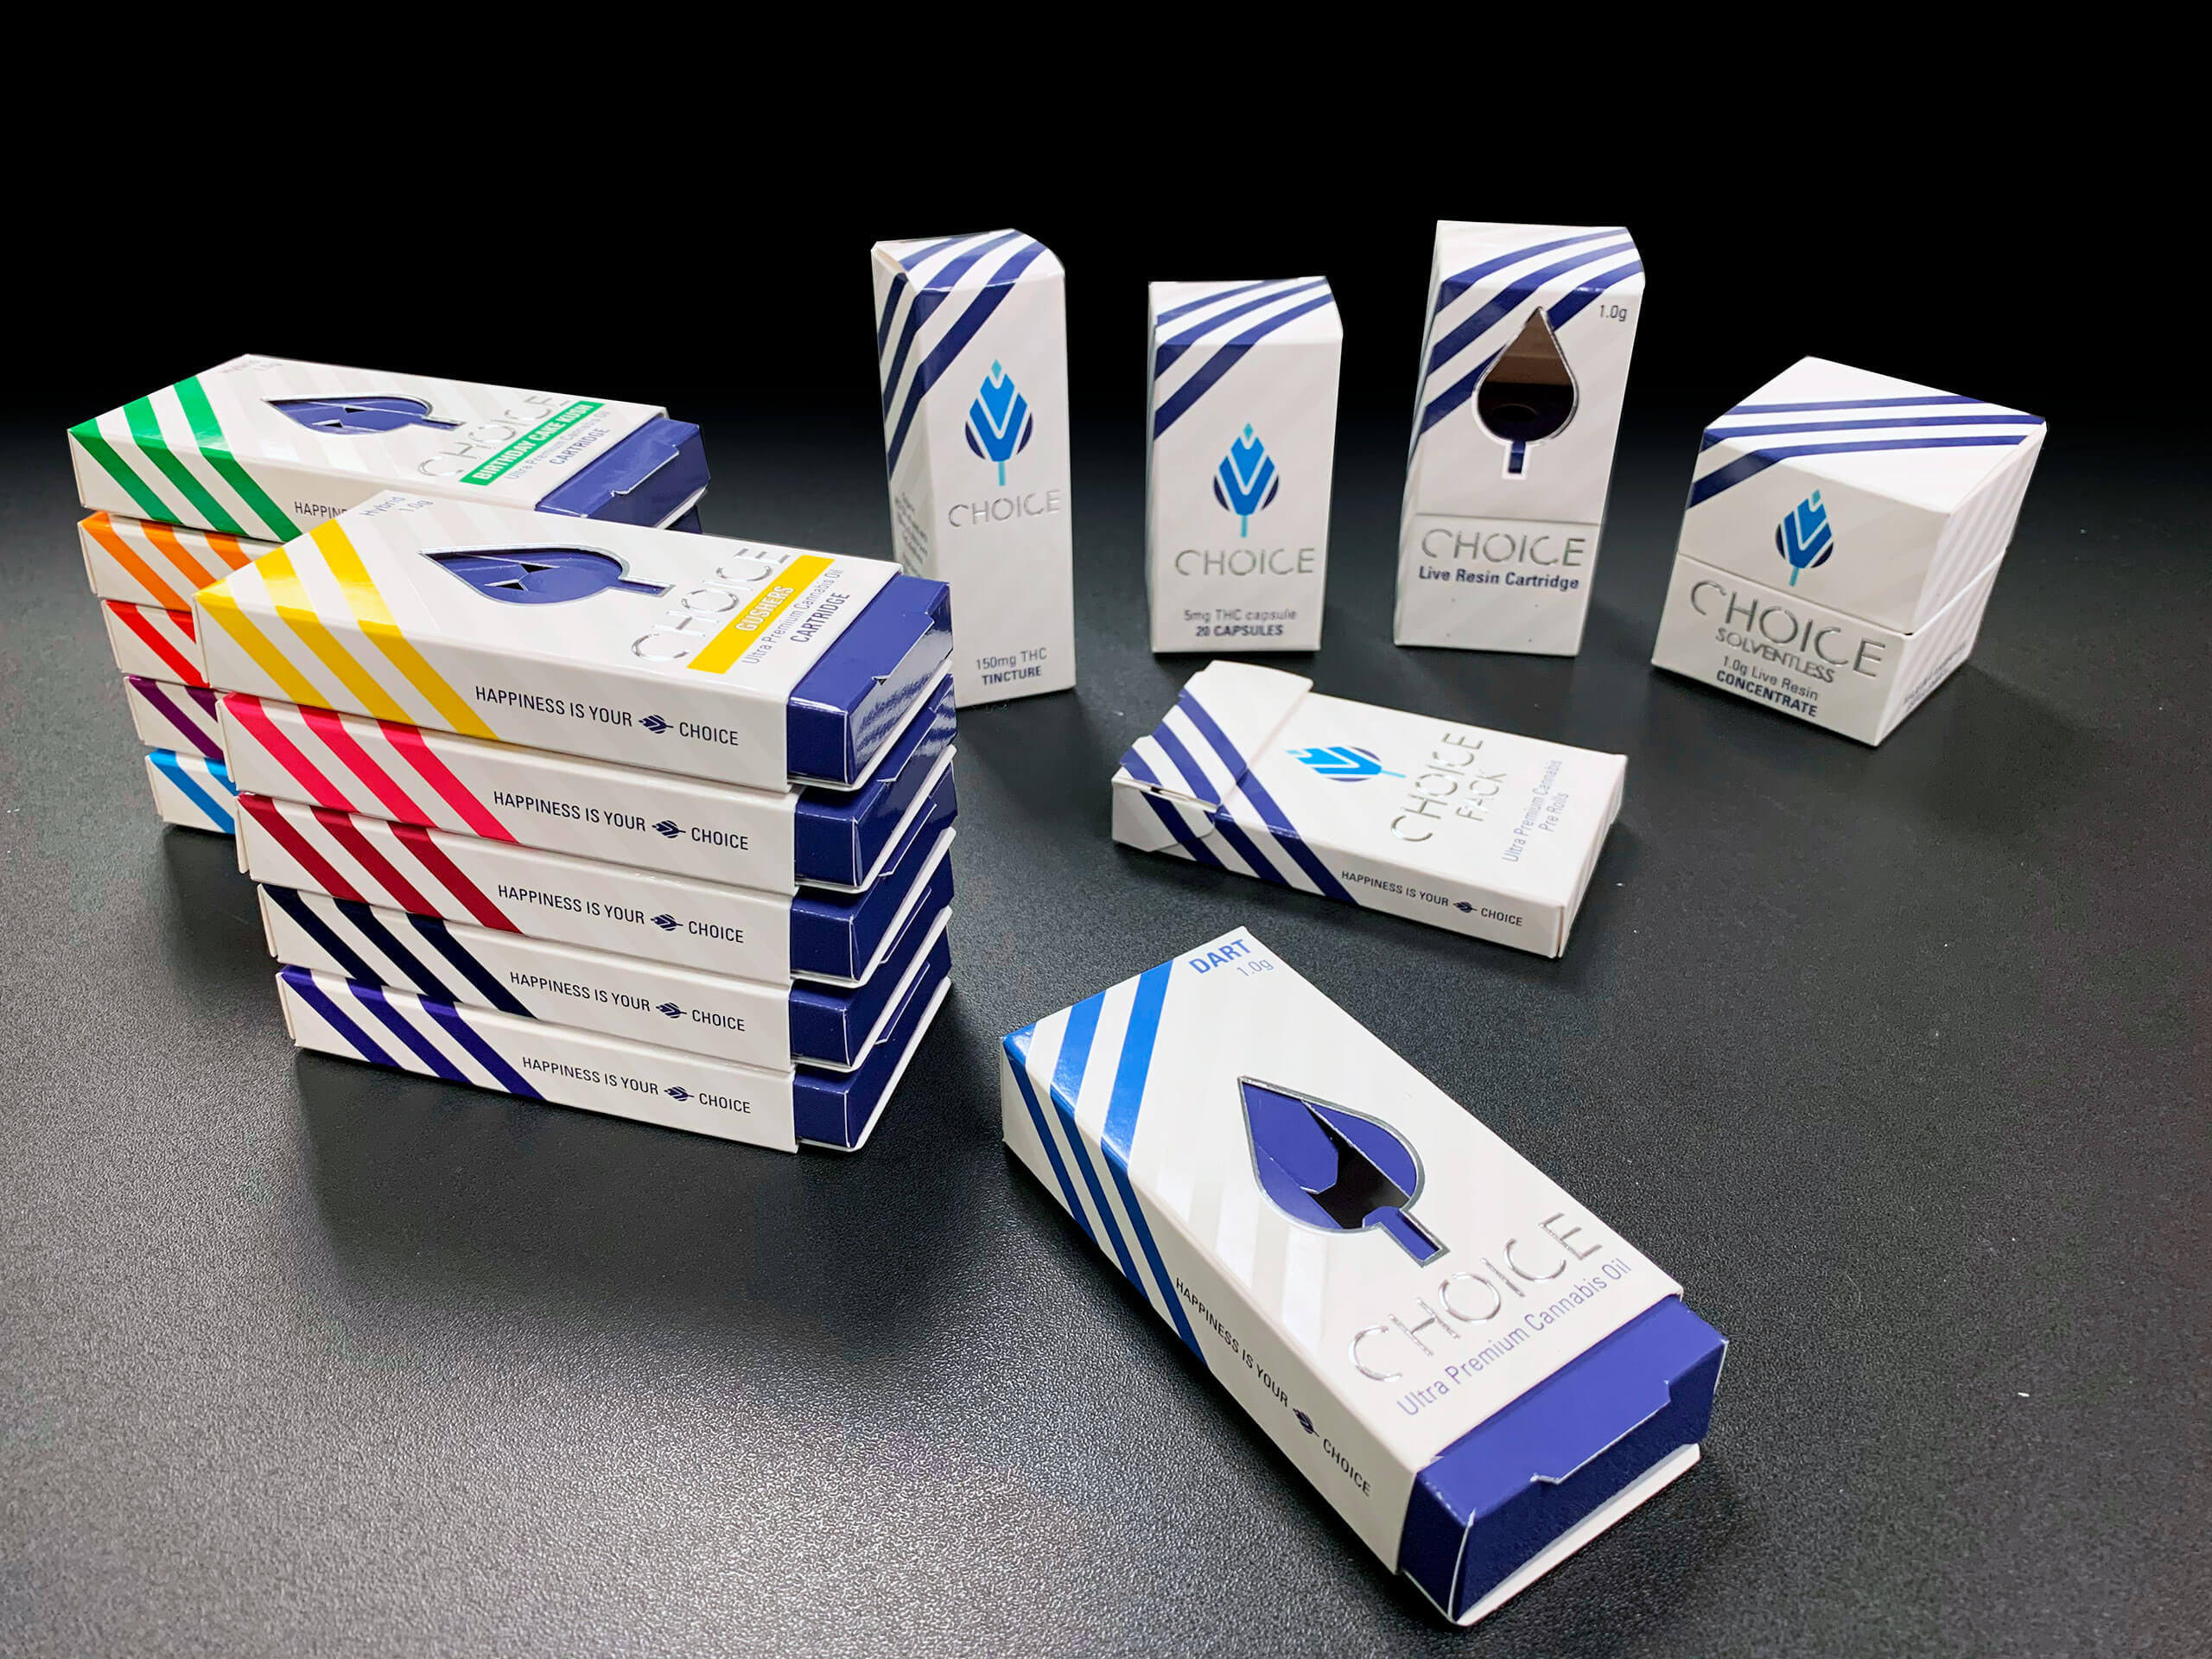 Choice Labs Cannabis Oil Cartridges Packaging